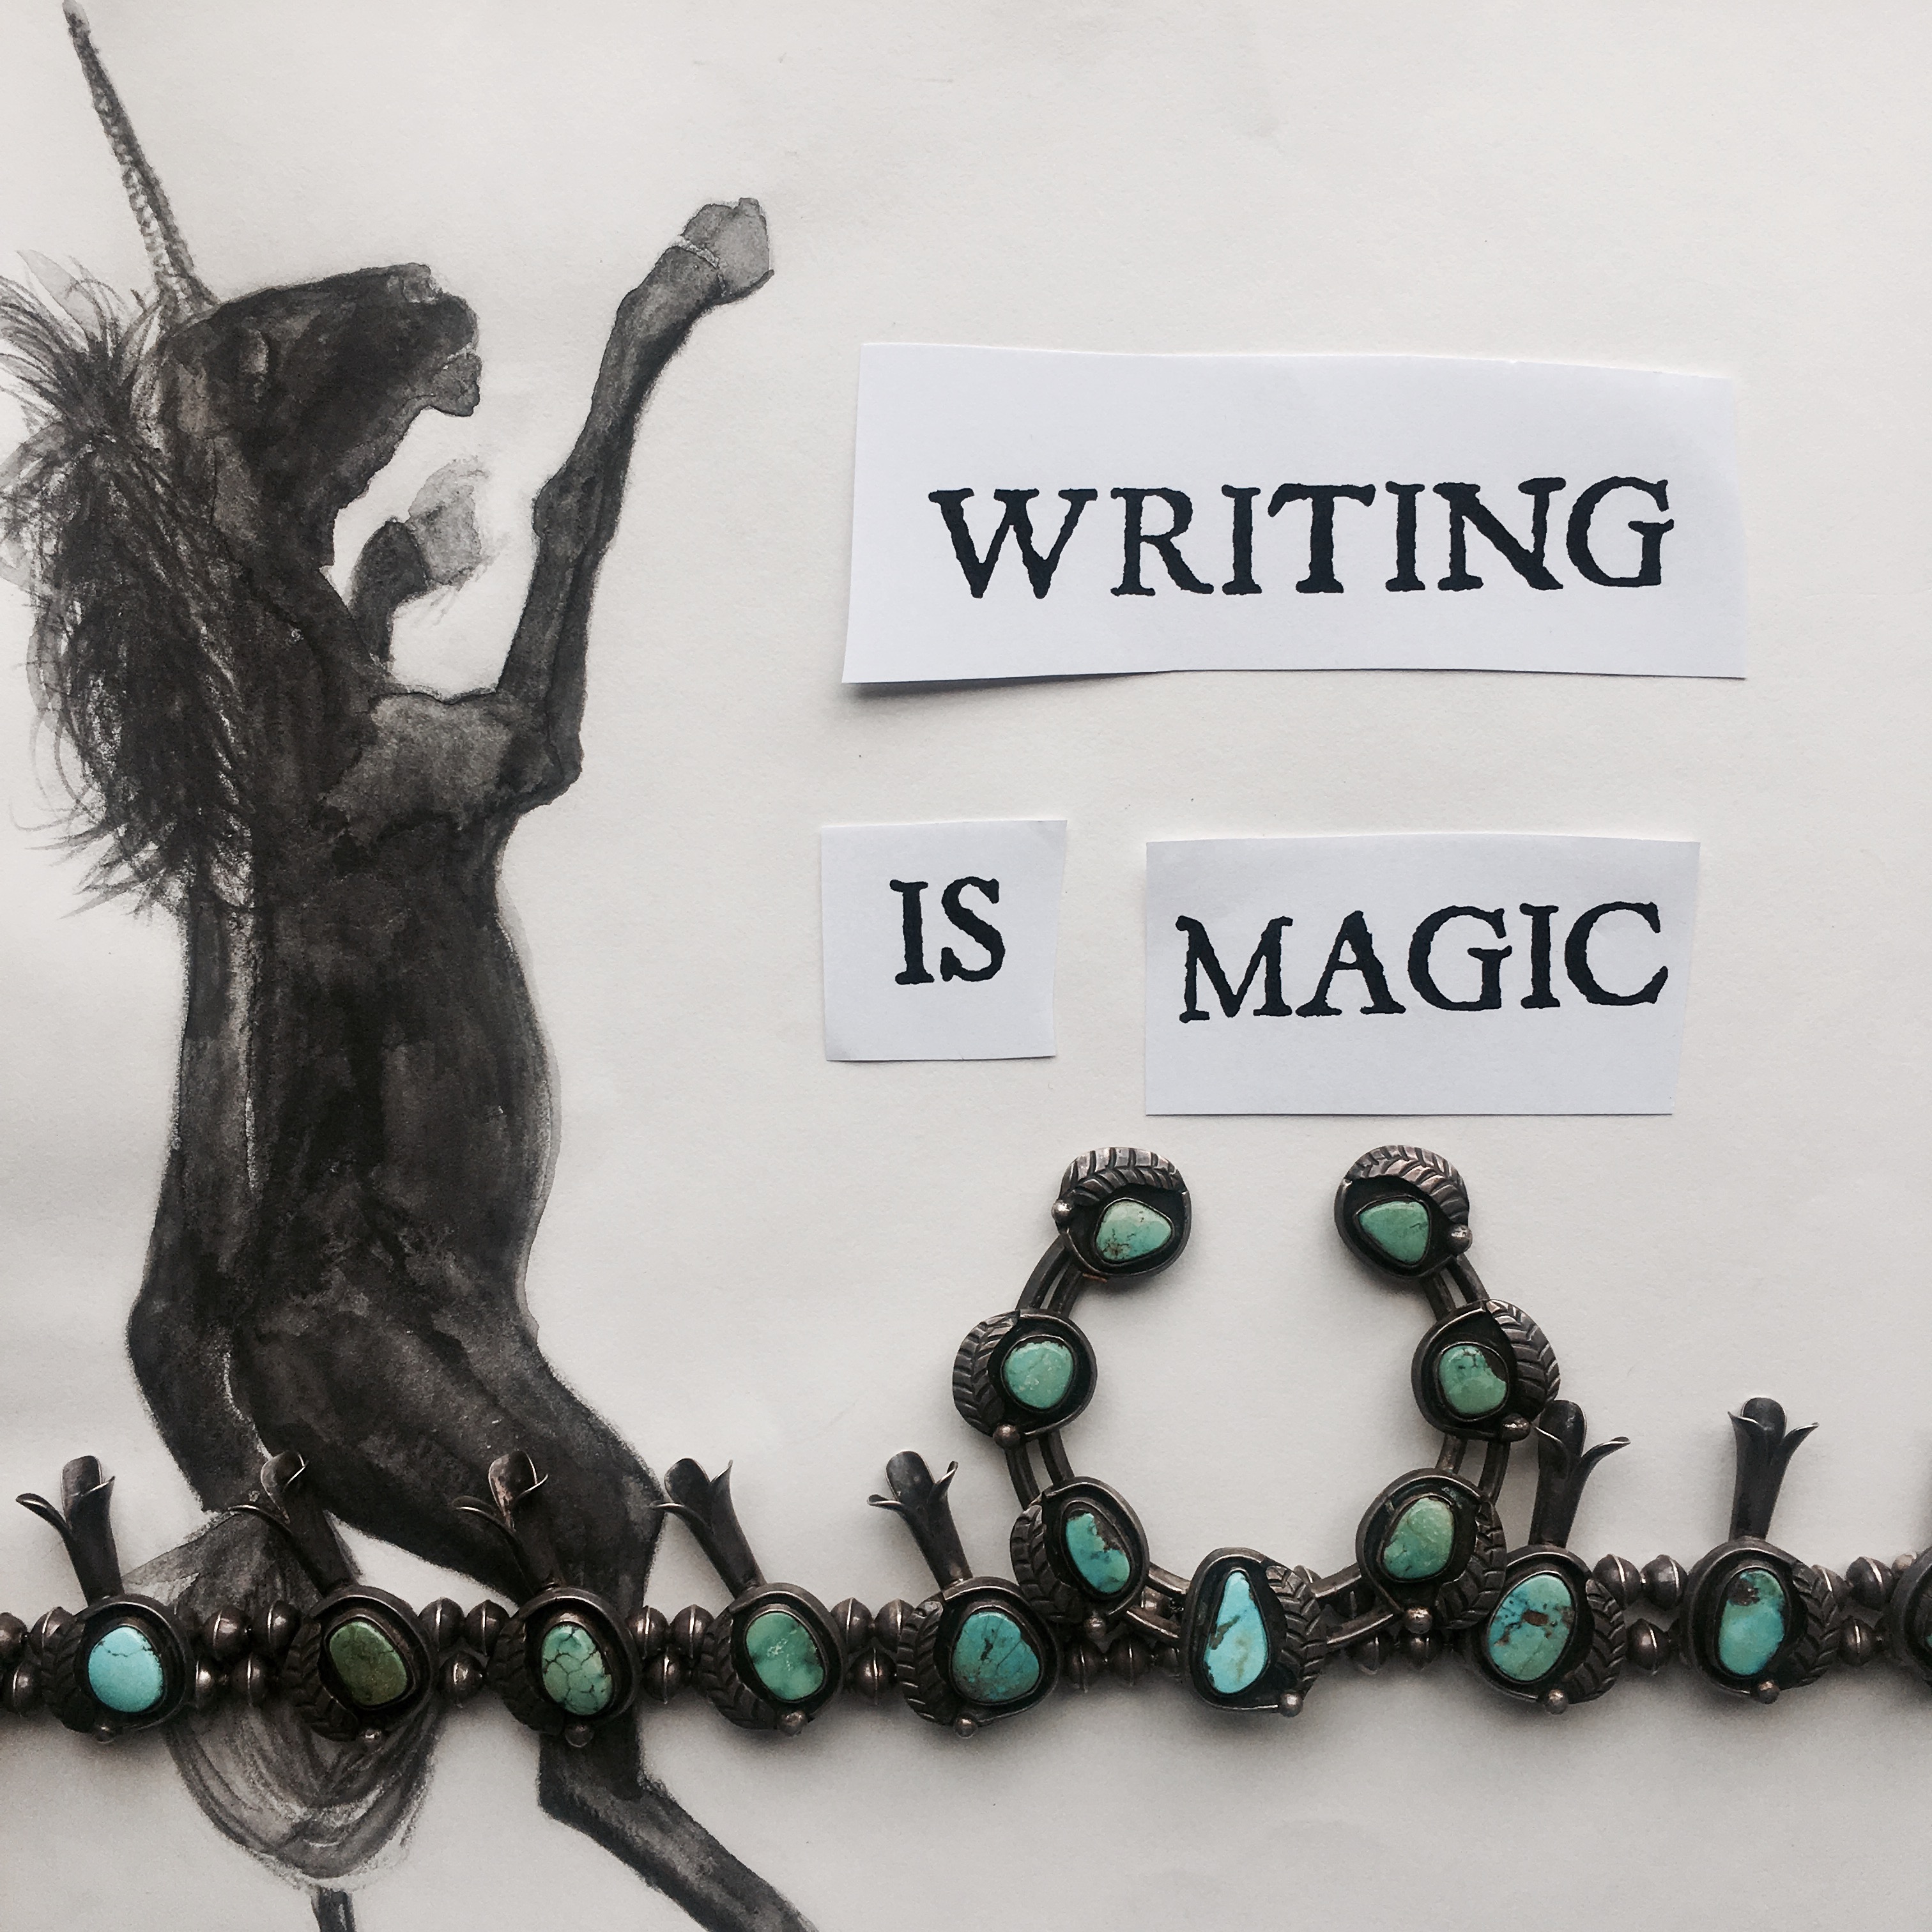 Writing Is Magic. Workshop flier. ©Oracle of Los Angeles 2017.